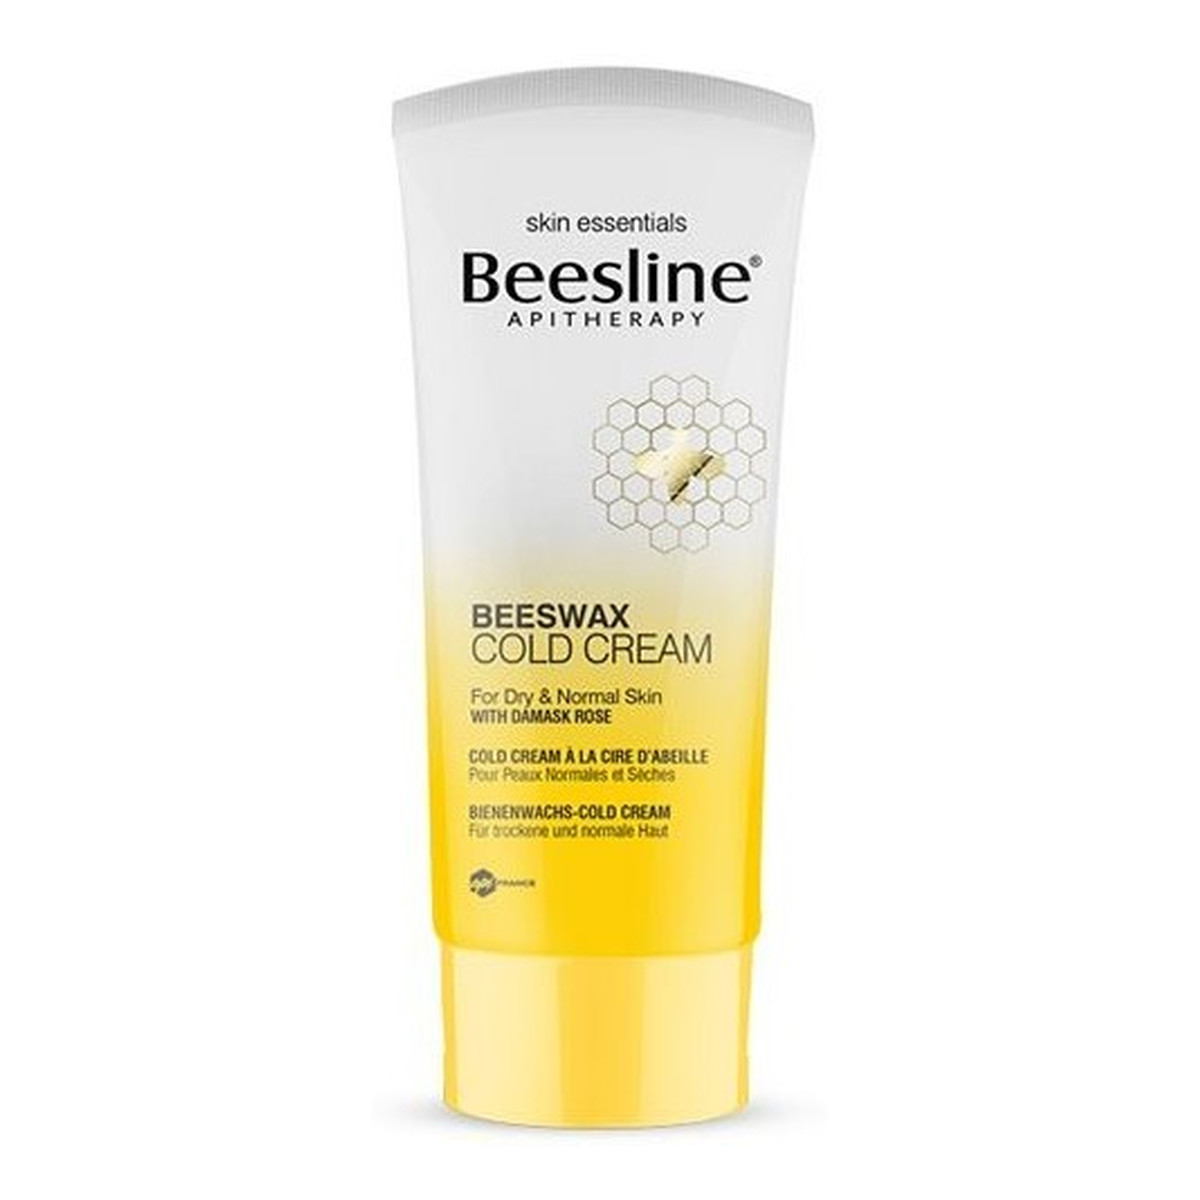 Beesline Beeswax nawilżający krem do twarzy i ciała z aromatem z róży 70g